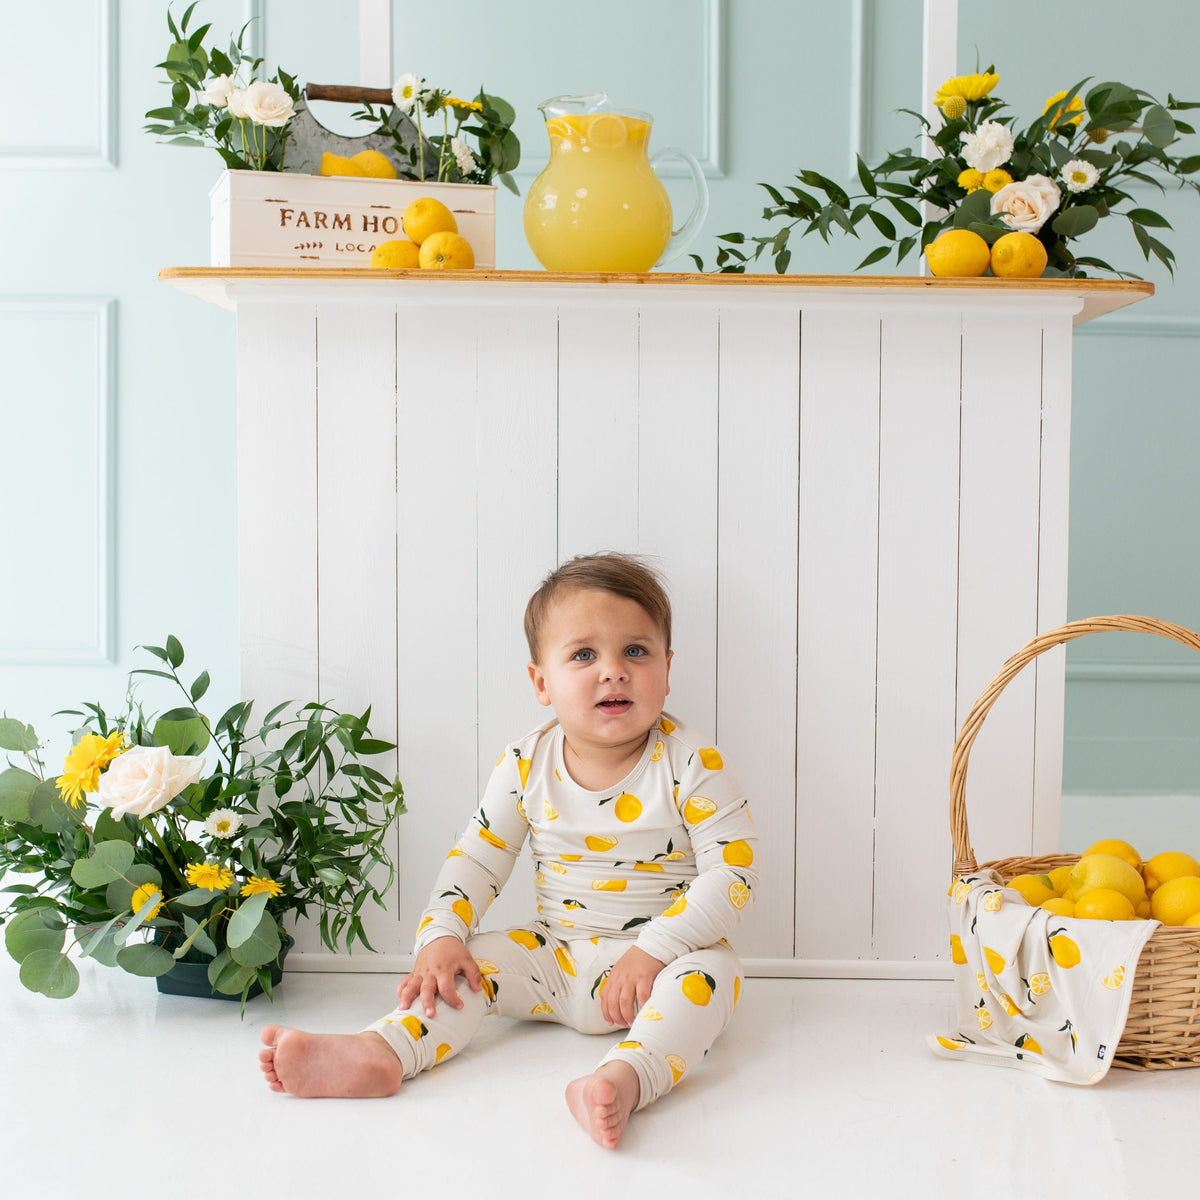 Kyte Baby Toddler Long Sleeve Pajamas Long Sleeve Pajamas in Lemon